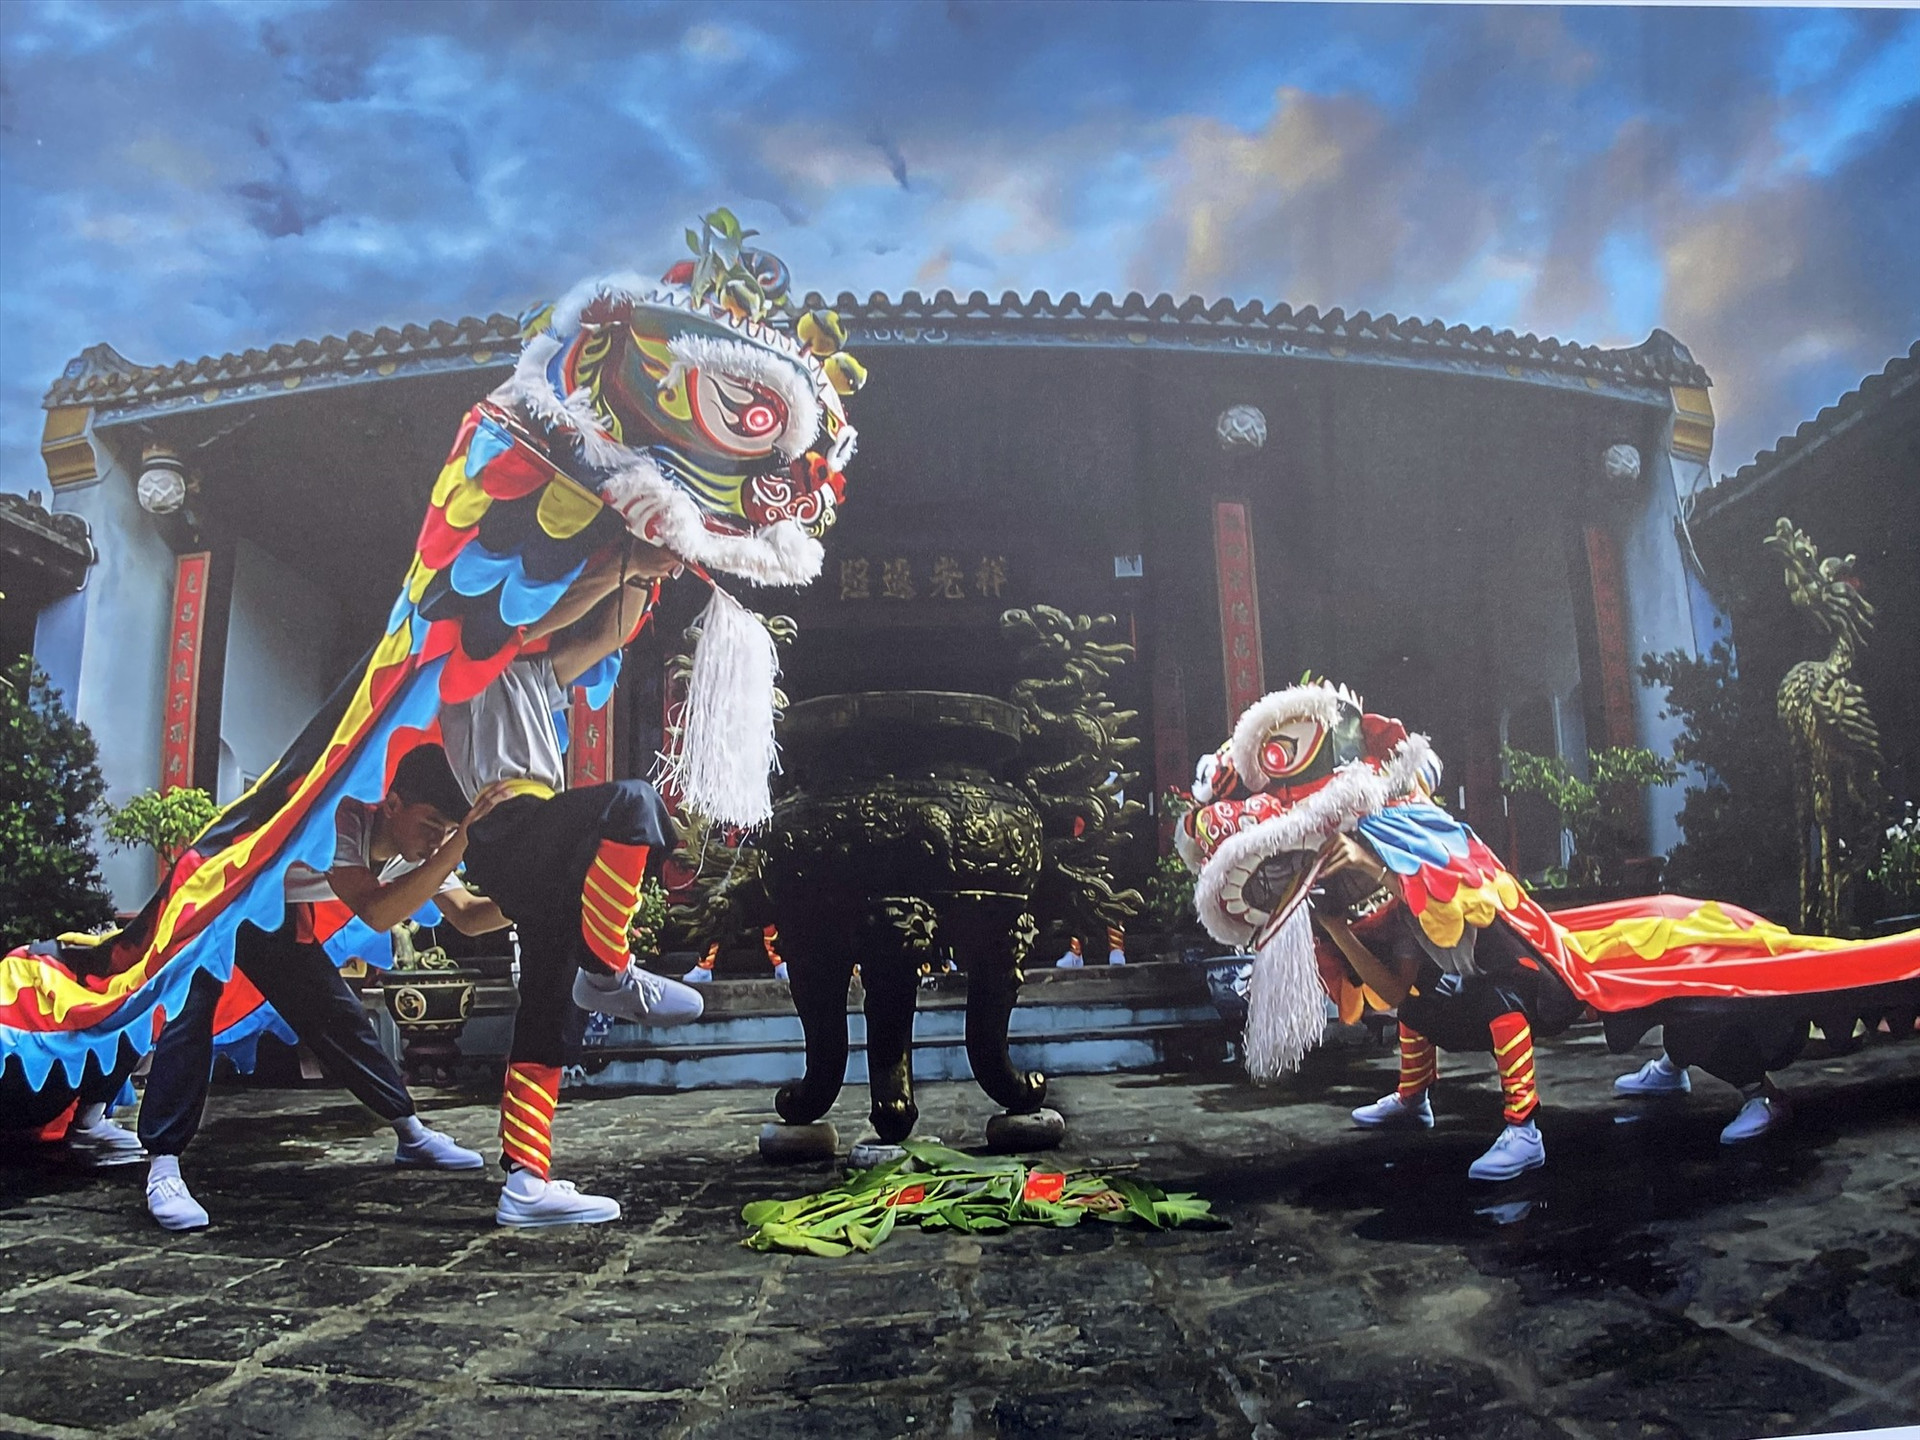 Lần đầu tiên triển lãm ảnh nghê thuật múa Thiên cẩu được tổ chức tại Hội An. Ảnh: K.L